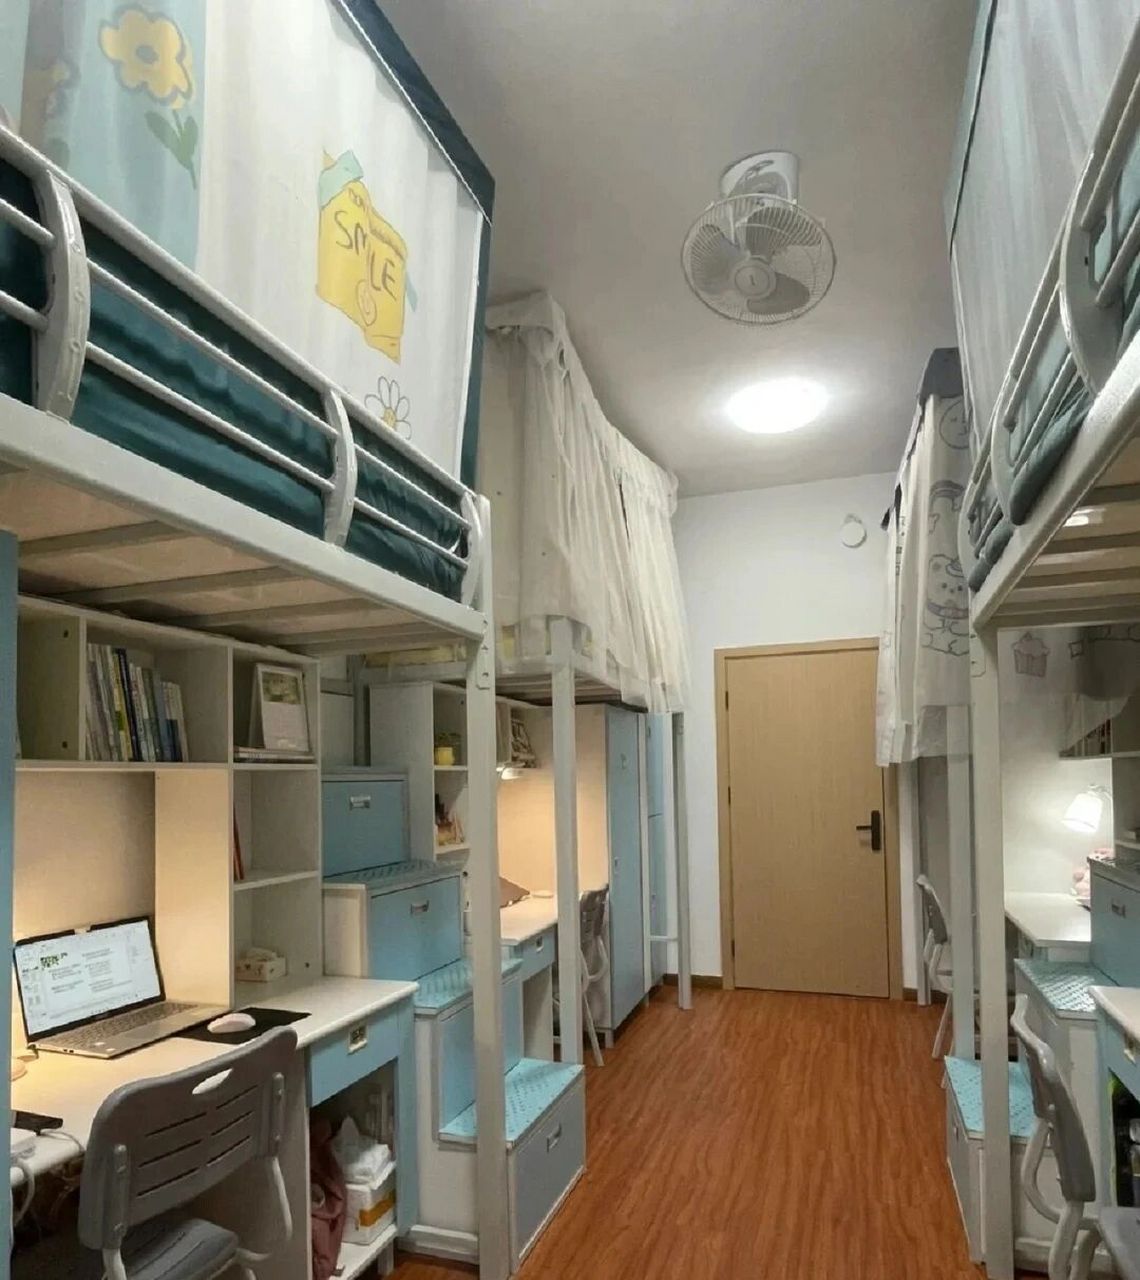 重庆人文科技学院住宿环境 图一:1300(上下床,有独立卫浴,空调,个人